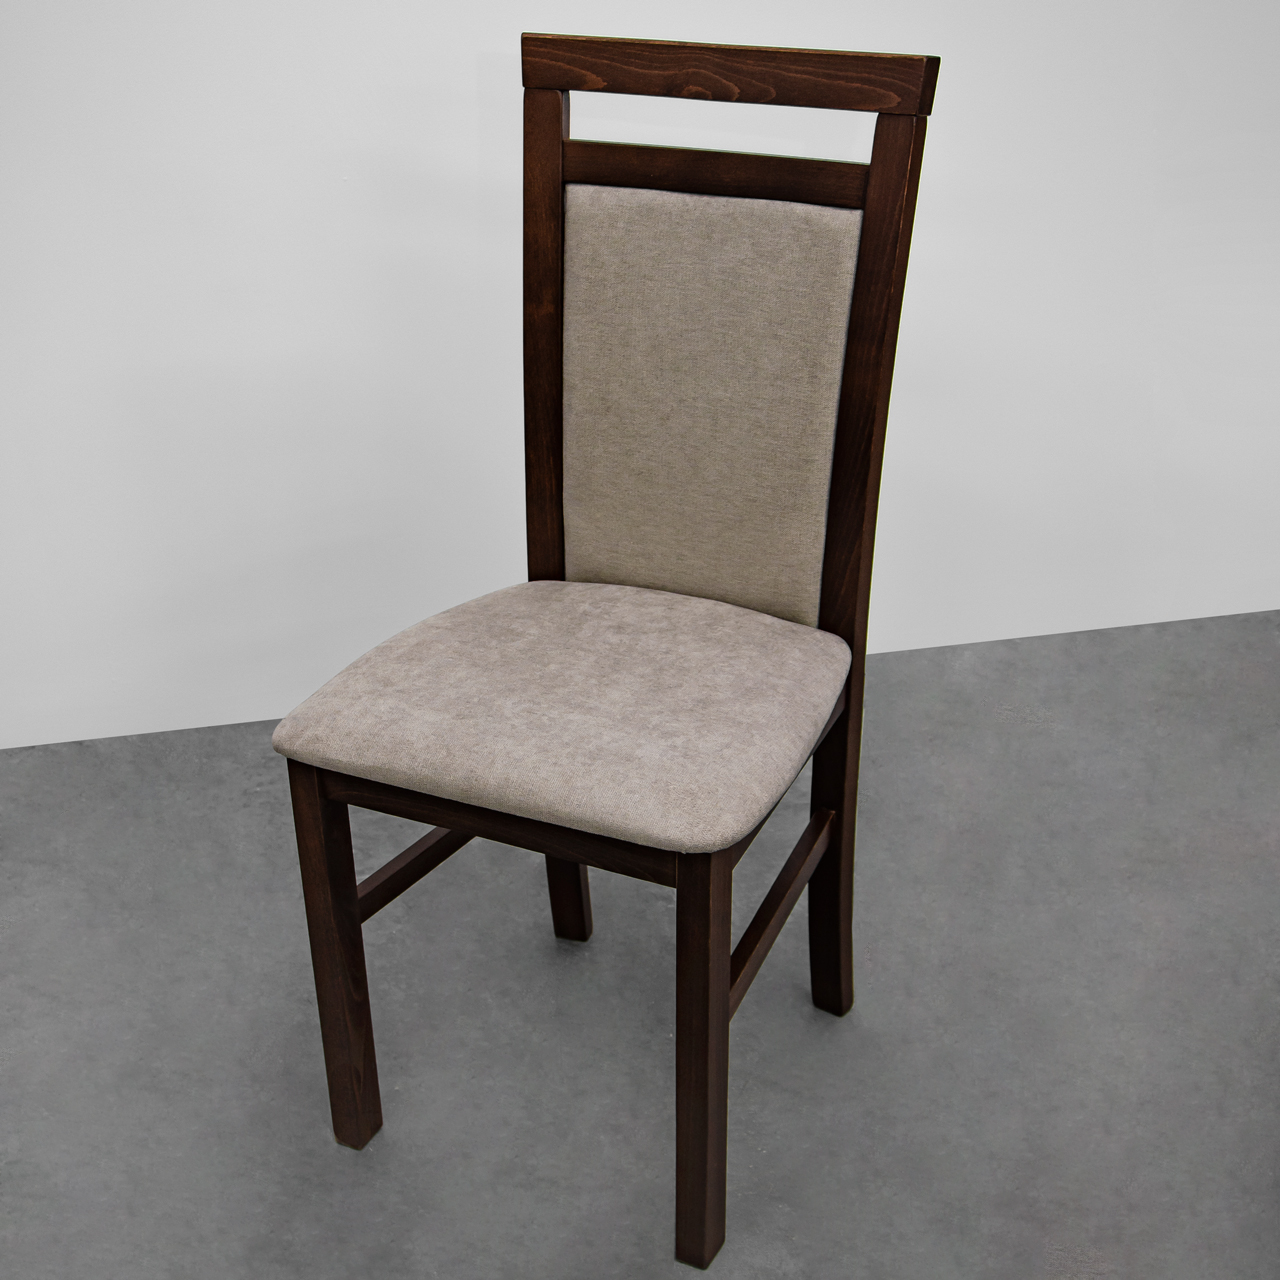 Tanie tapicerowane krzesło DK25 orzech (3x) WYPRZEDAŻ